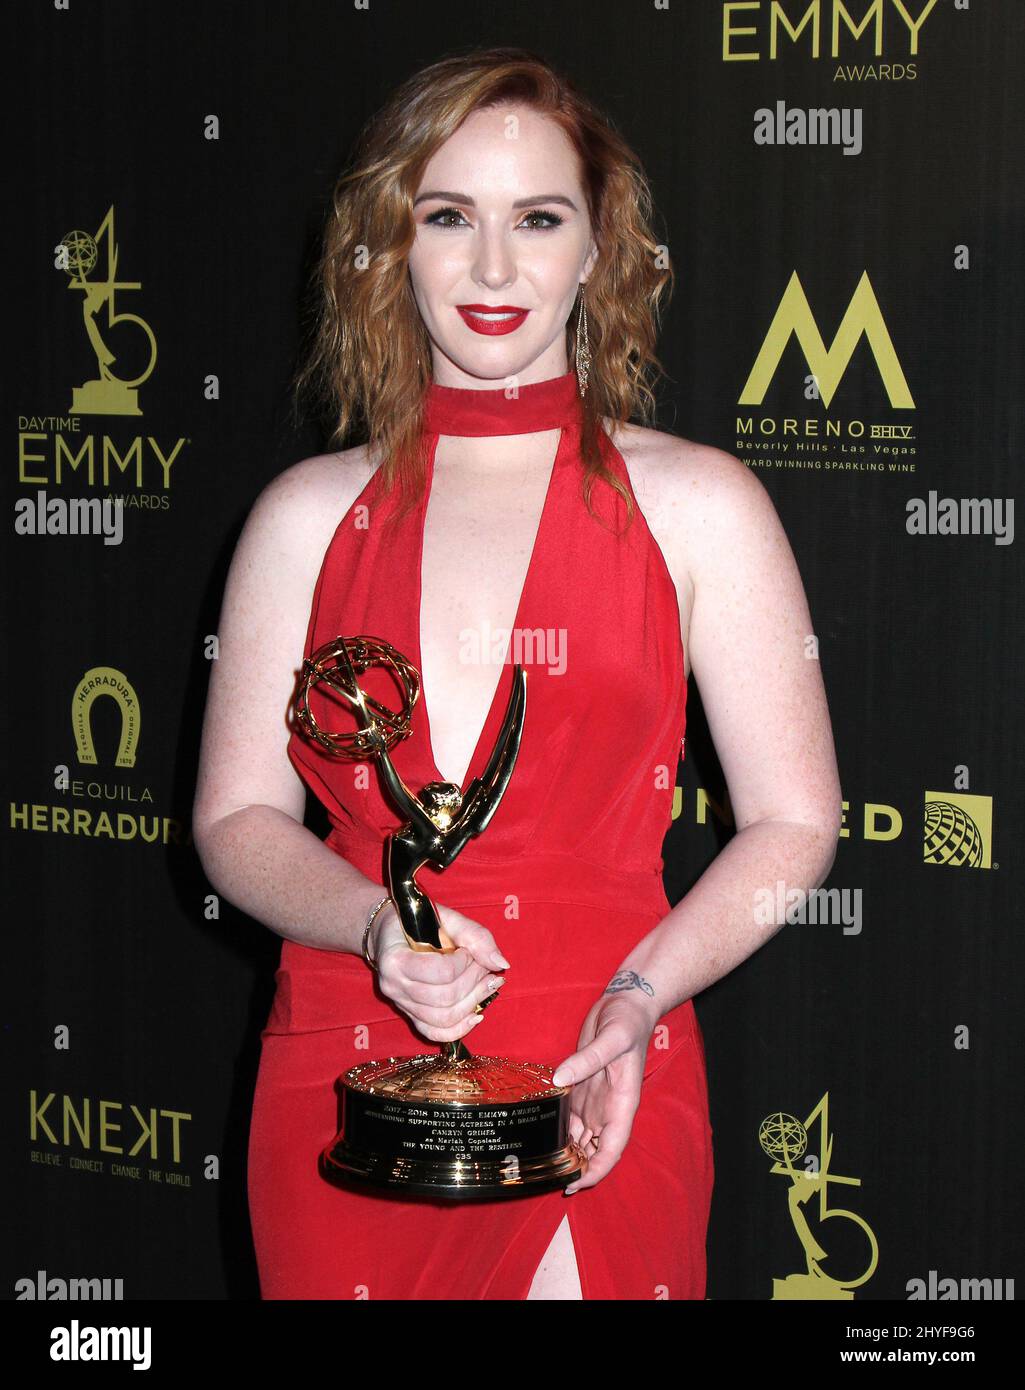 Camryn Grimes dans la salle de presse lors des Prix Emmy annuels de jour 45th qui ont eu lieu au Centre civique de Pasadena le 29 avril 2018 Banque D'Images